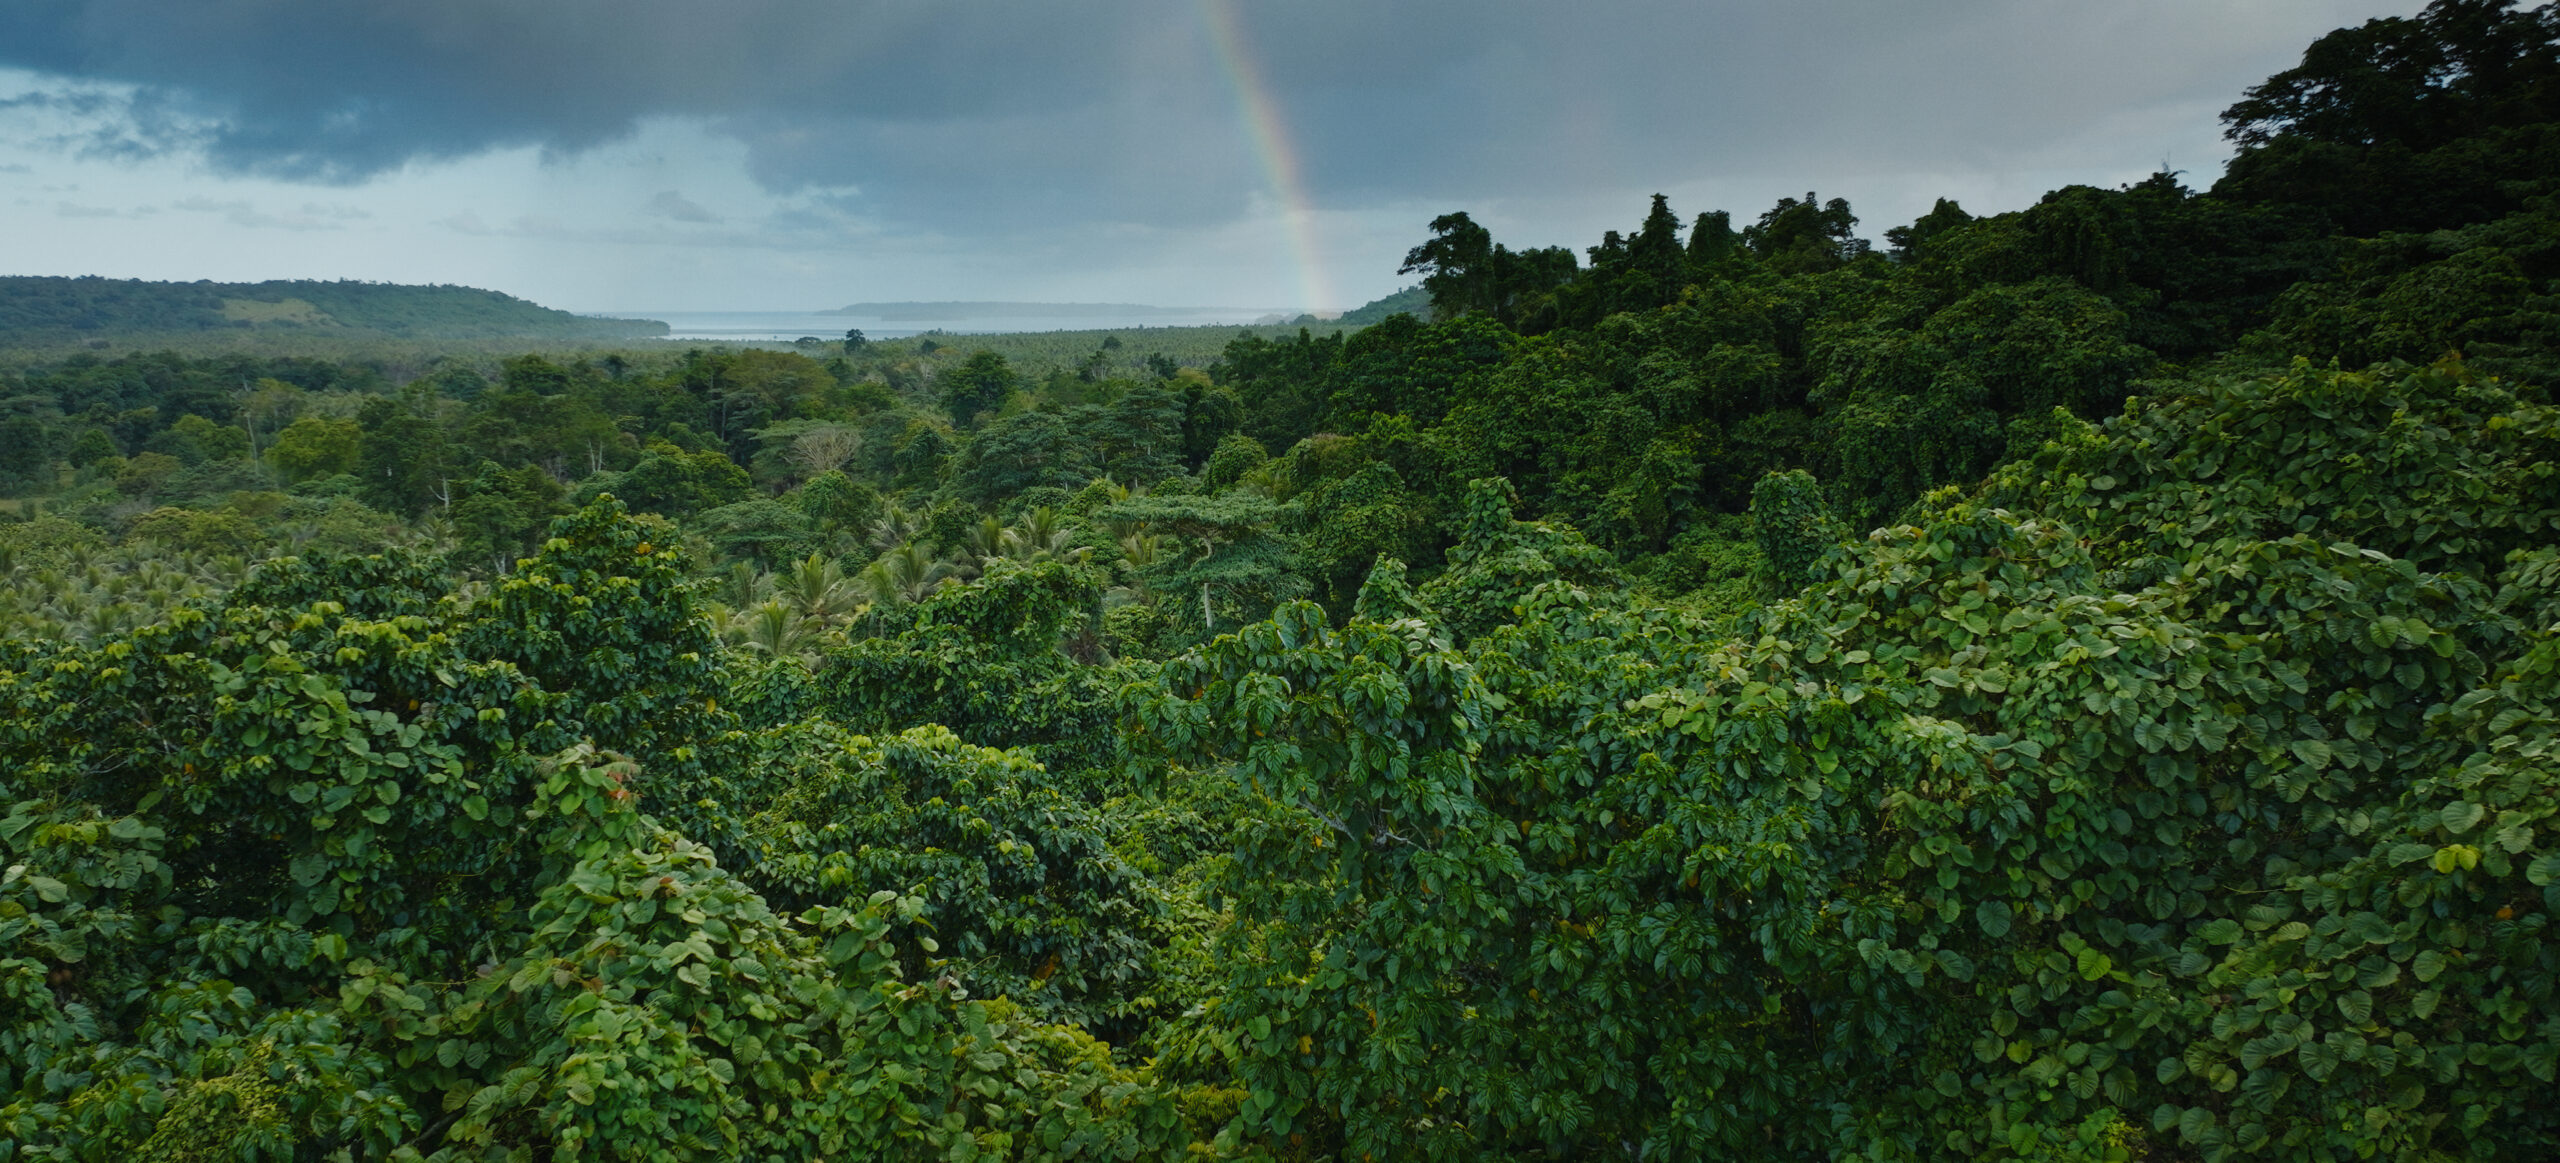 YUMI_Vanuatu-landscape-2